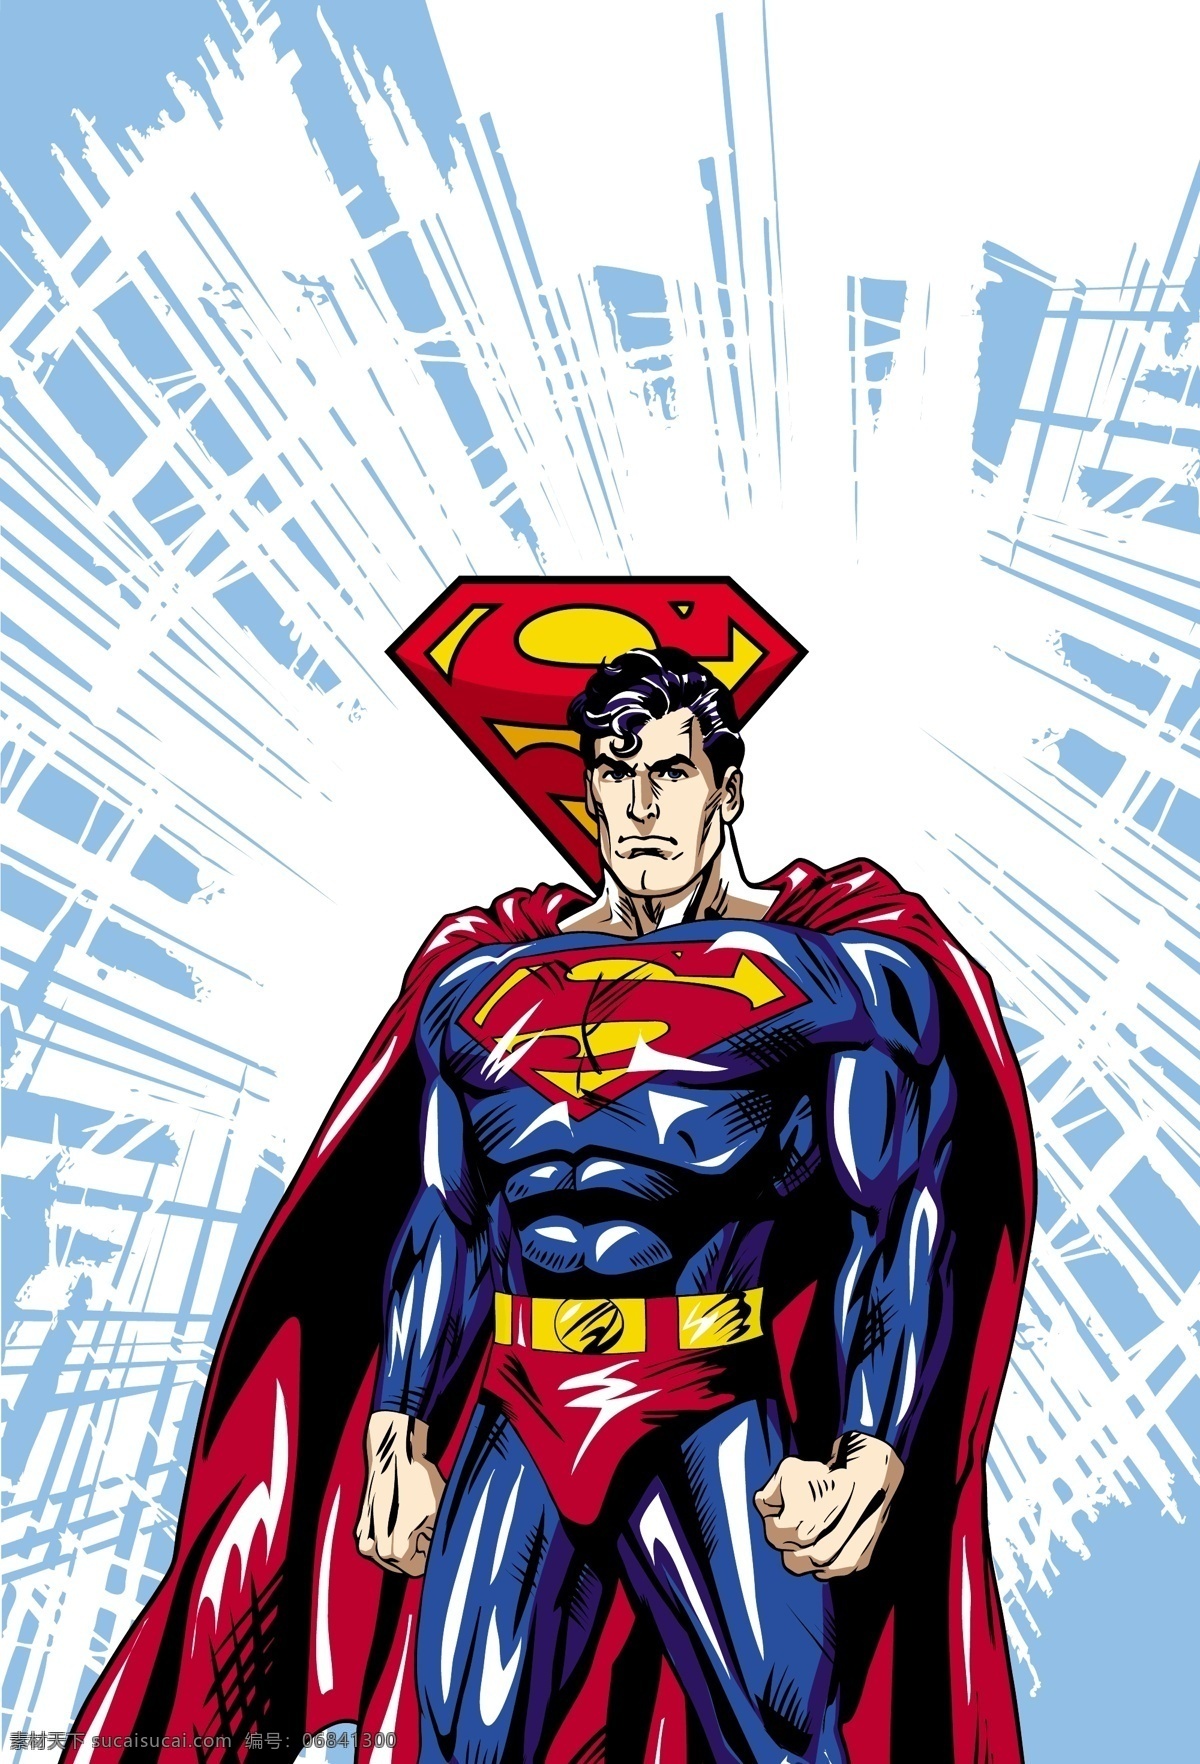 超人 superman 蝙蝠侠 batman 闪电侠 flash 华纳 dc漫画 超级英雄 英雄联盟 卡通形象 其他人物 矢量人物 矢量 超人英雄